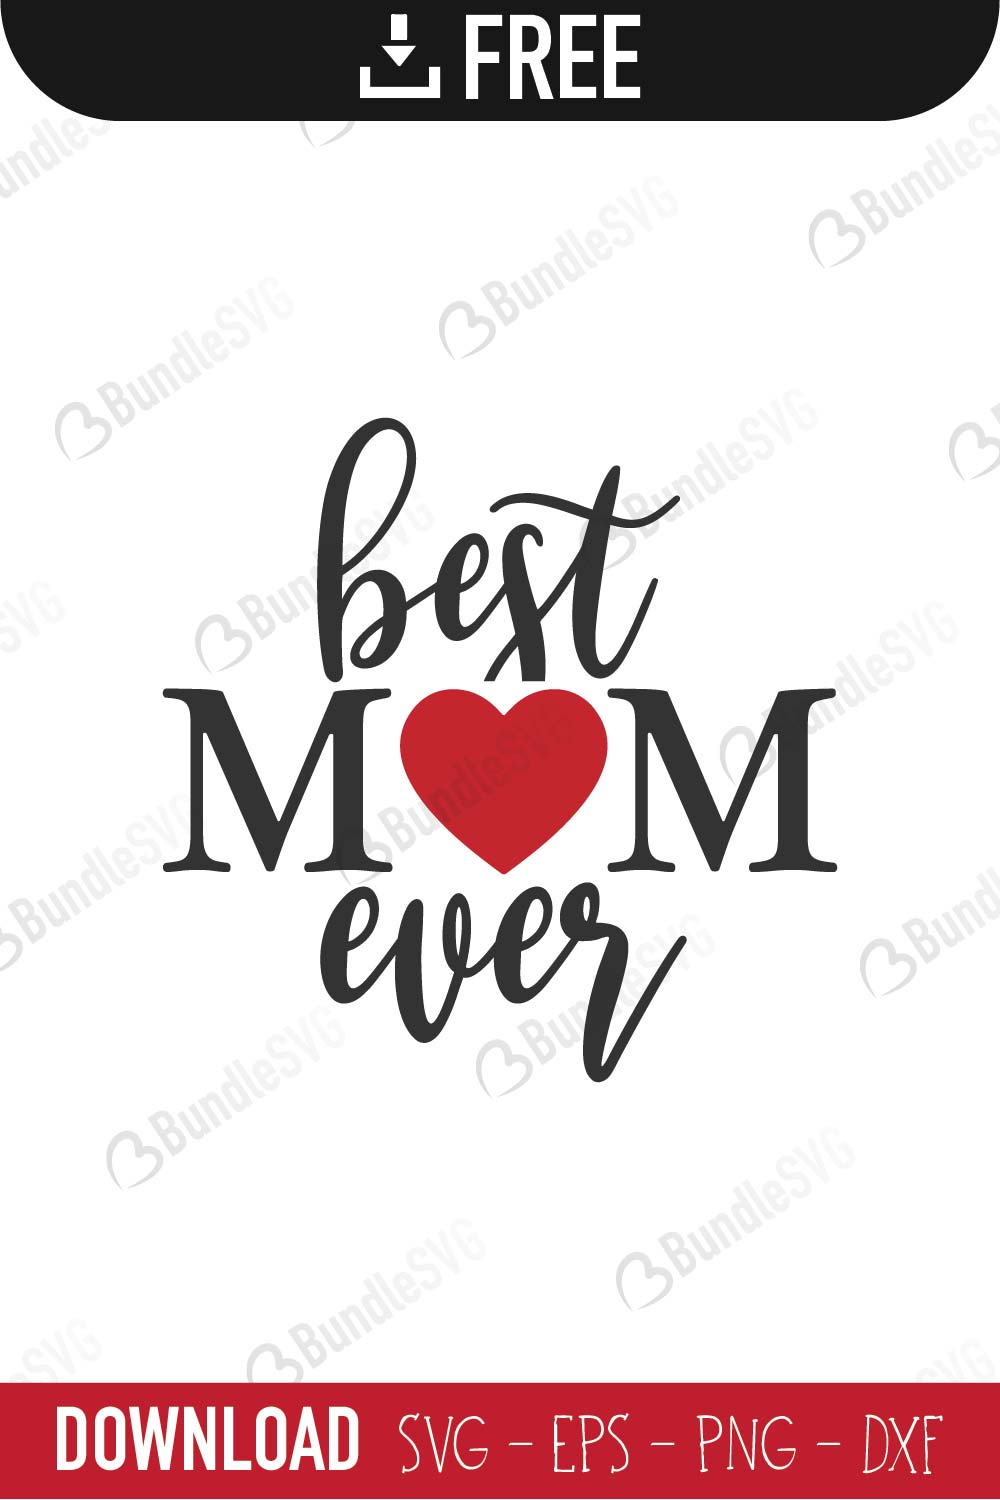 Best Mom Ever SVG Cut Files Free Download | BundleSVG